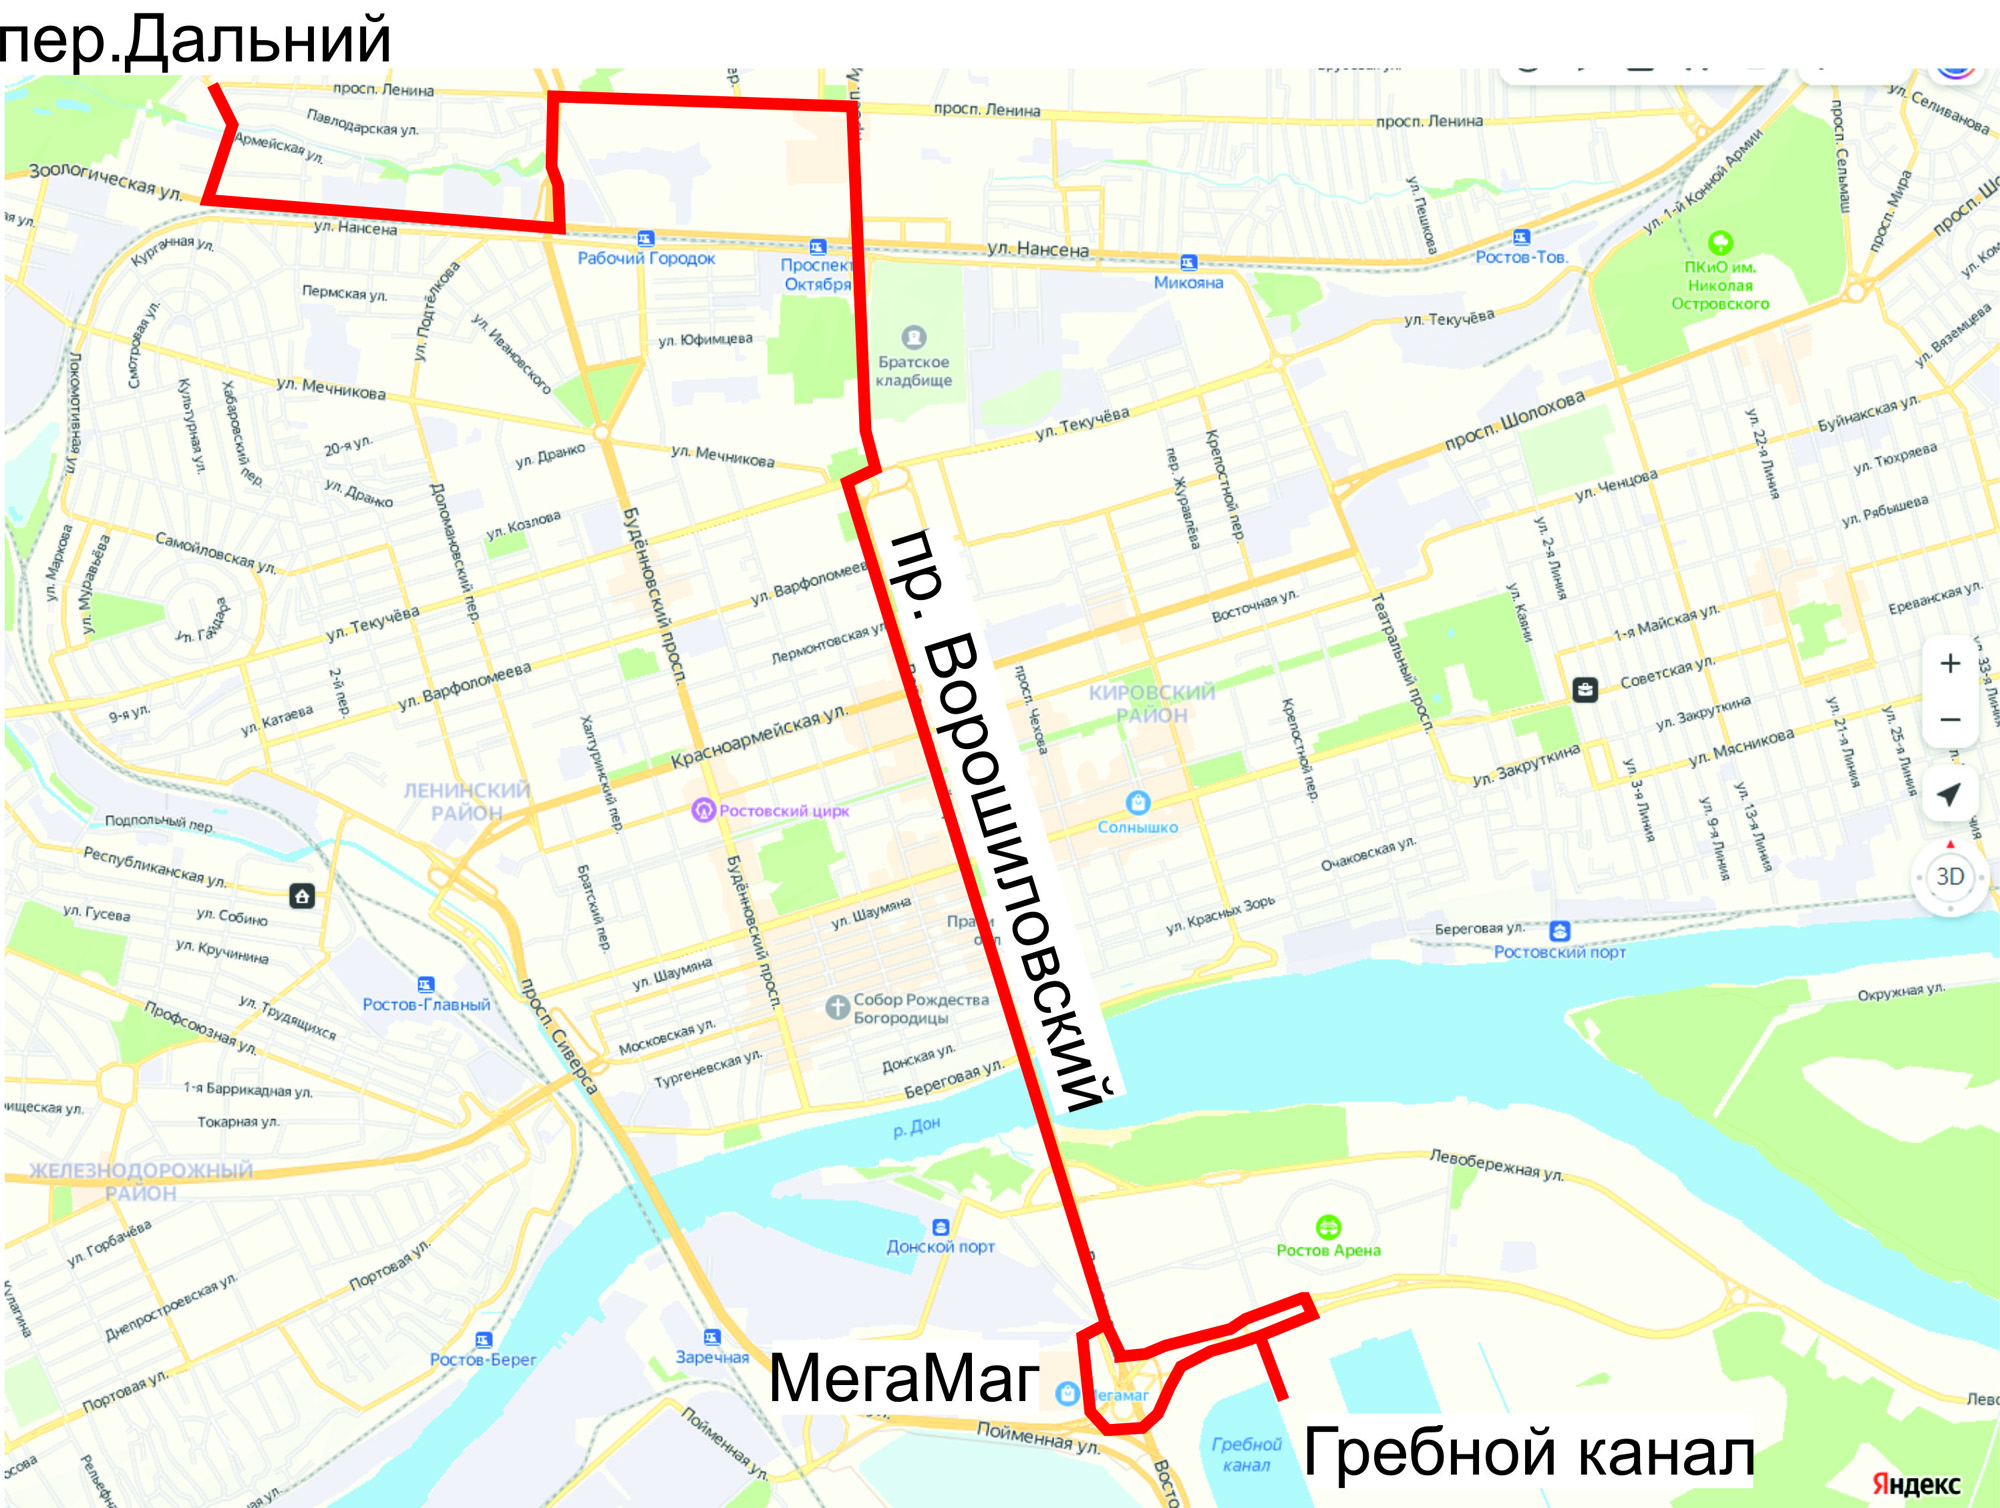 В Ростове-на-Дону гребной канал и зоопарк свяжет автобусный маршрут №76 - фото 1